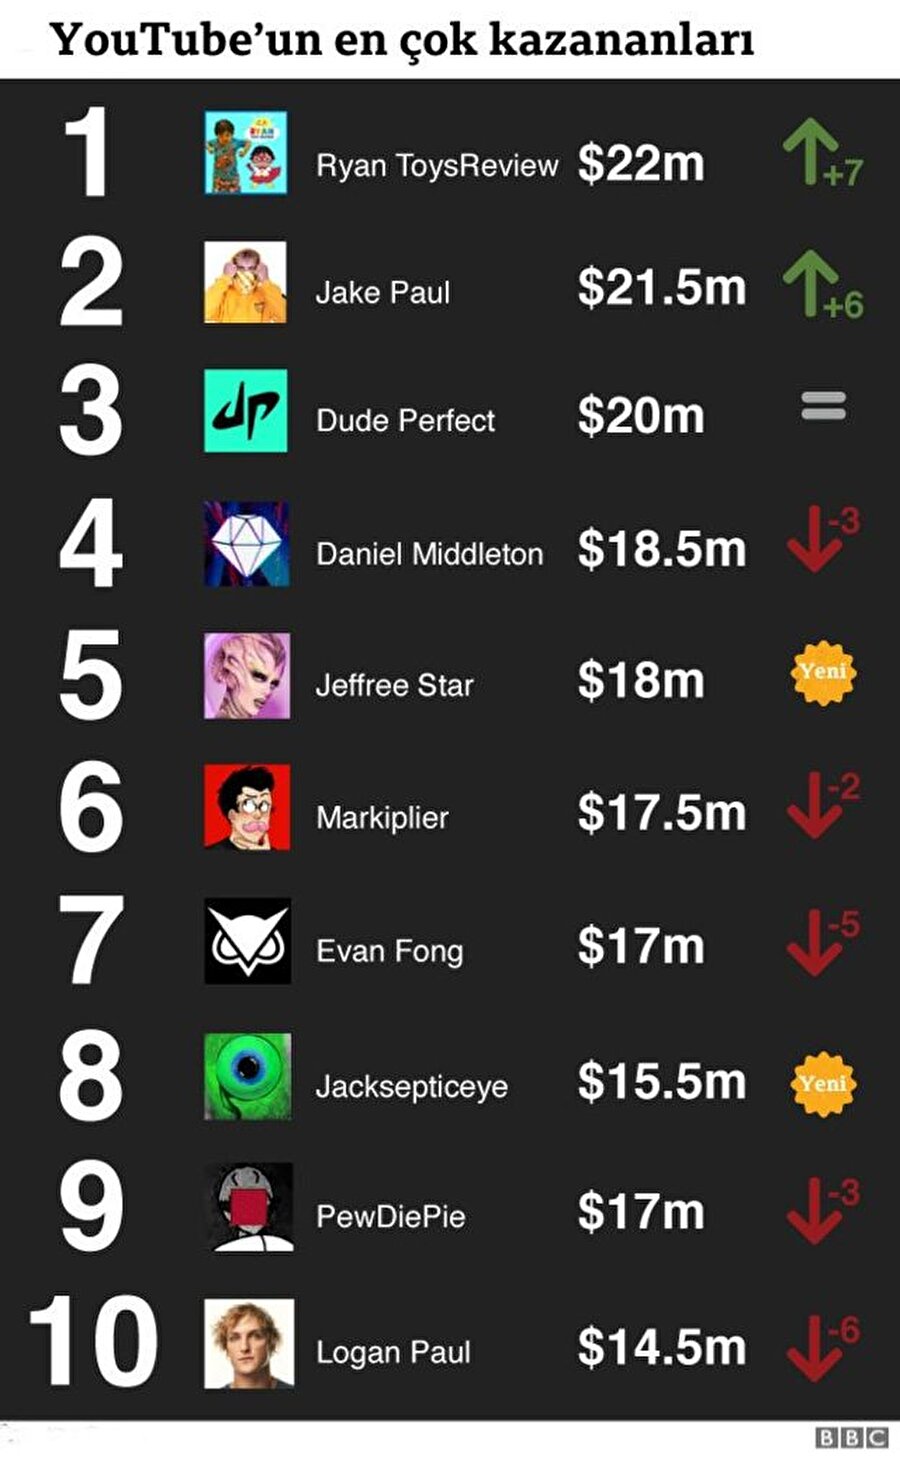 YouTube'un en çok kazananlar listesi

                                    
                                    Forbes’ın en çok kazanan YouTuberlar listesinde ikinci sırada Jake Paul, üçüncü sırasında komedi grubu Dude Perfect, dördüncü sırasında ise Minecraft oynayan Daniel Middleton yer alıyor.
                                
                                